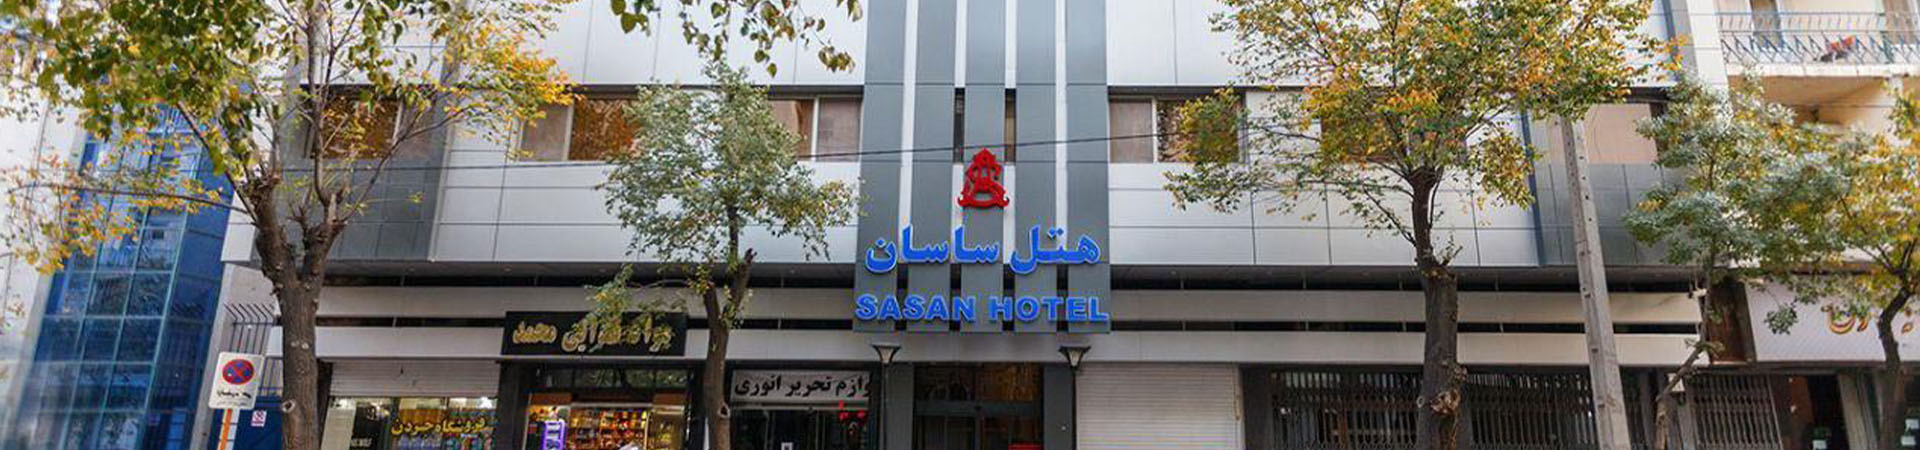 تور هتل ساسان شیراز